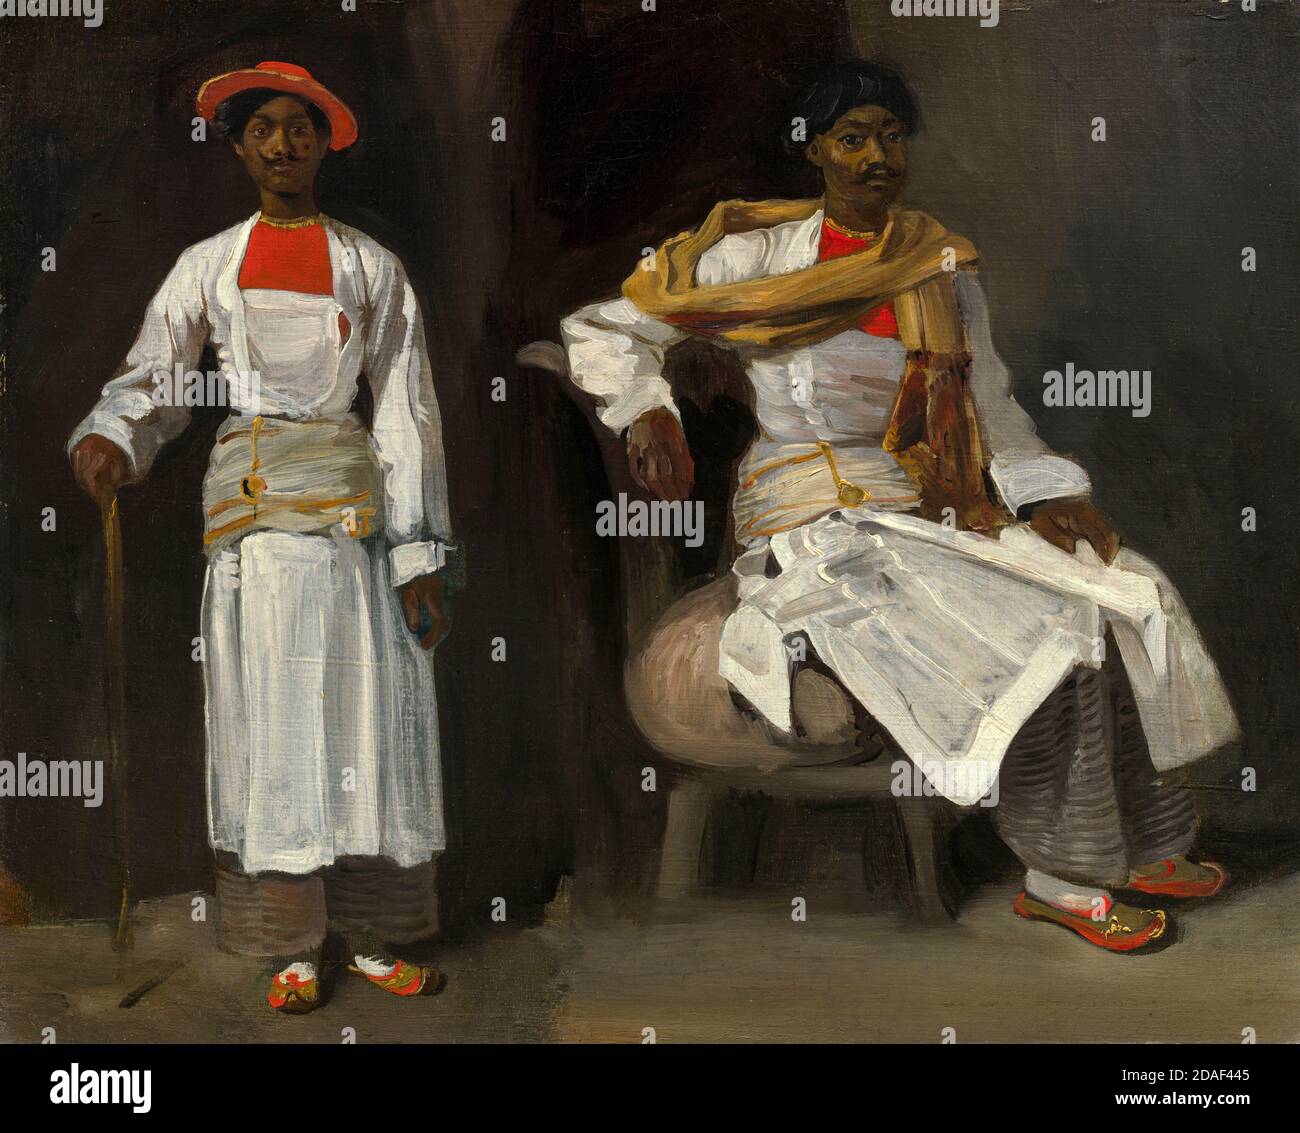 Eugene Delacroix, deux études d'un Indien de Calcutta, assis et debout, peinture, 1823-1824 Banque D'Images